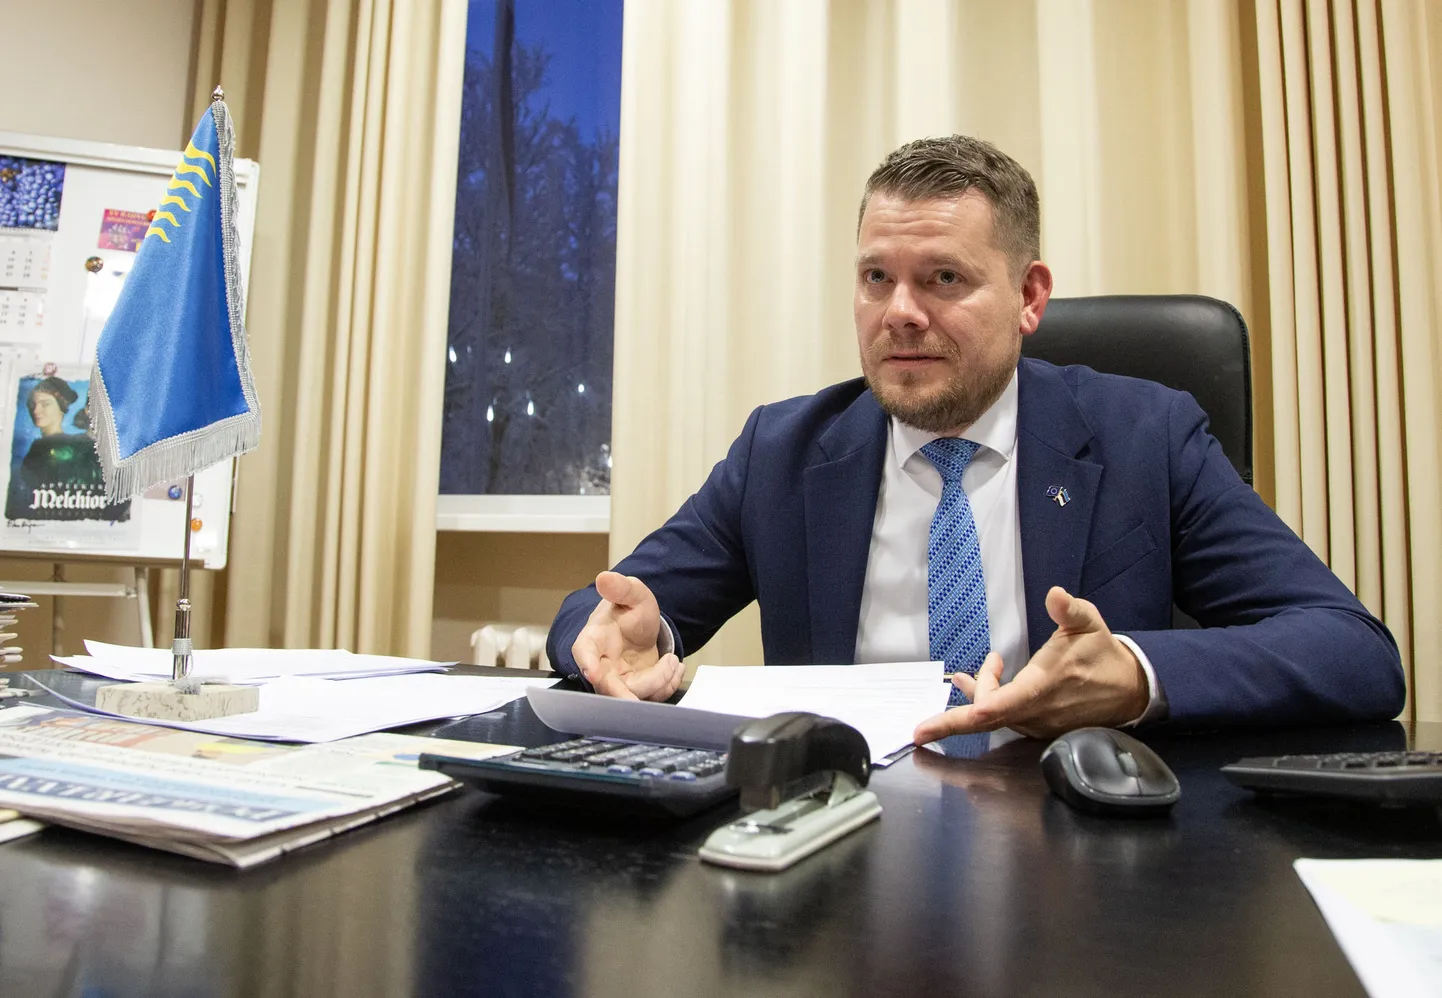 Ligemale pool aastat Kohtla-Järve linnapea kabinetis toimetav Henri Kaselo asub tegema linnavalitsuses struktuurireformi, mida eelmine linnapea Virve Linder nimetab vabanemiseks nendest ametnikest, kes temaga suhtlevad.